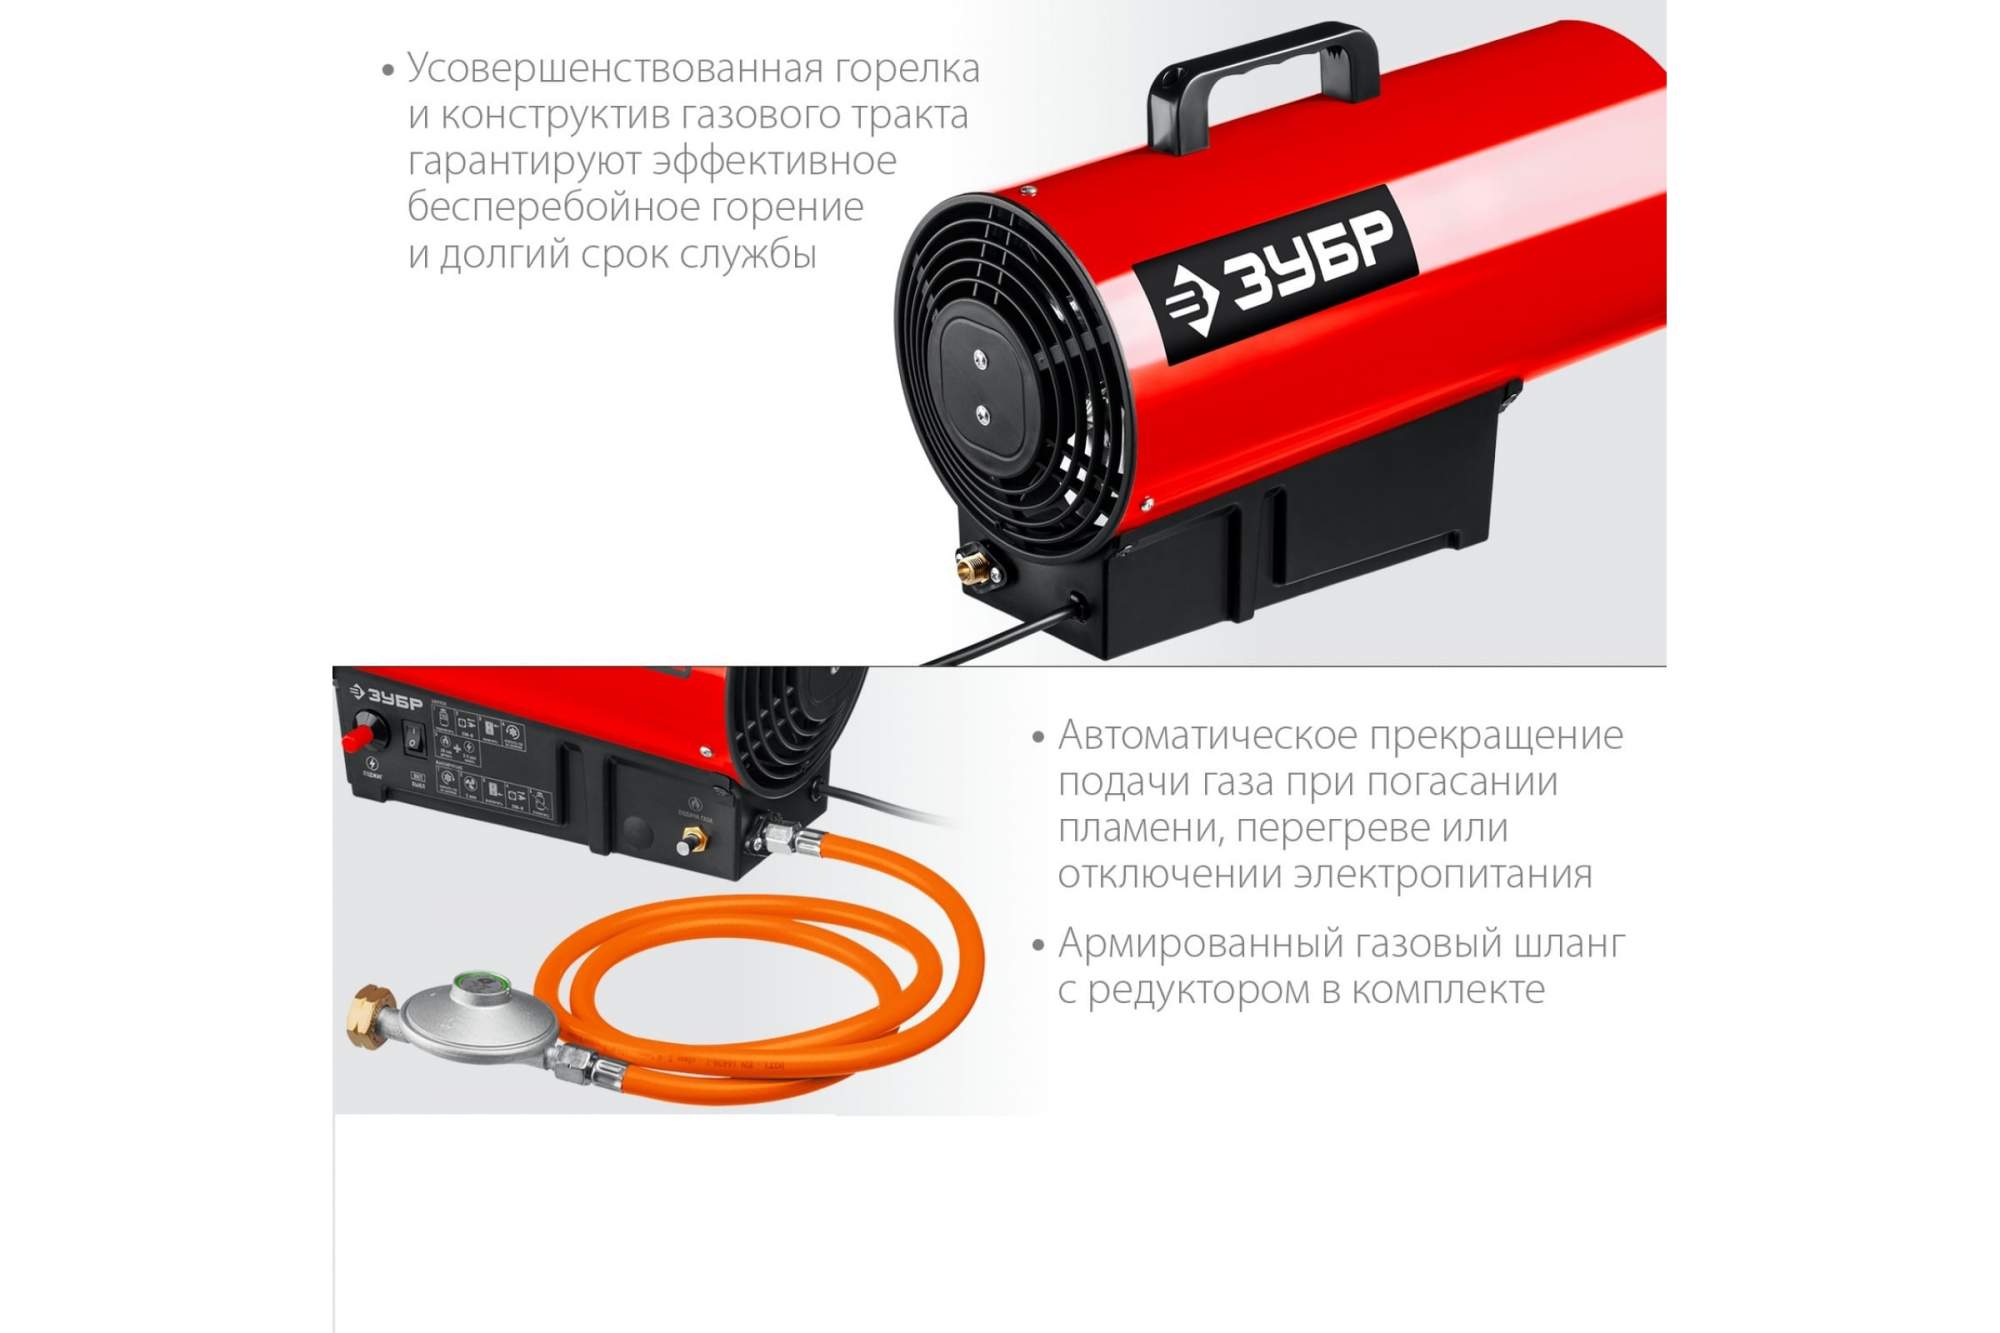  газовая Зубр серия «МАСТЕР», ТПГ-12 -  в tool-parts FBS .